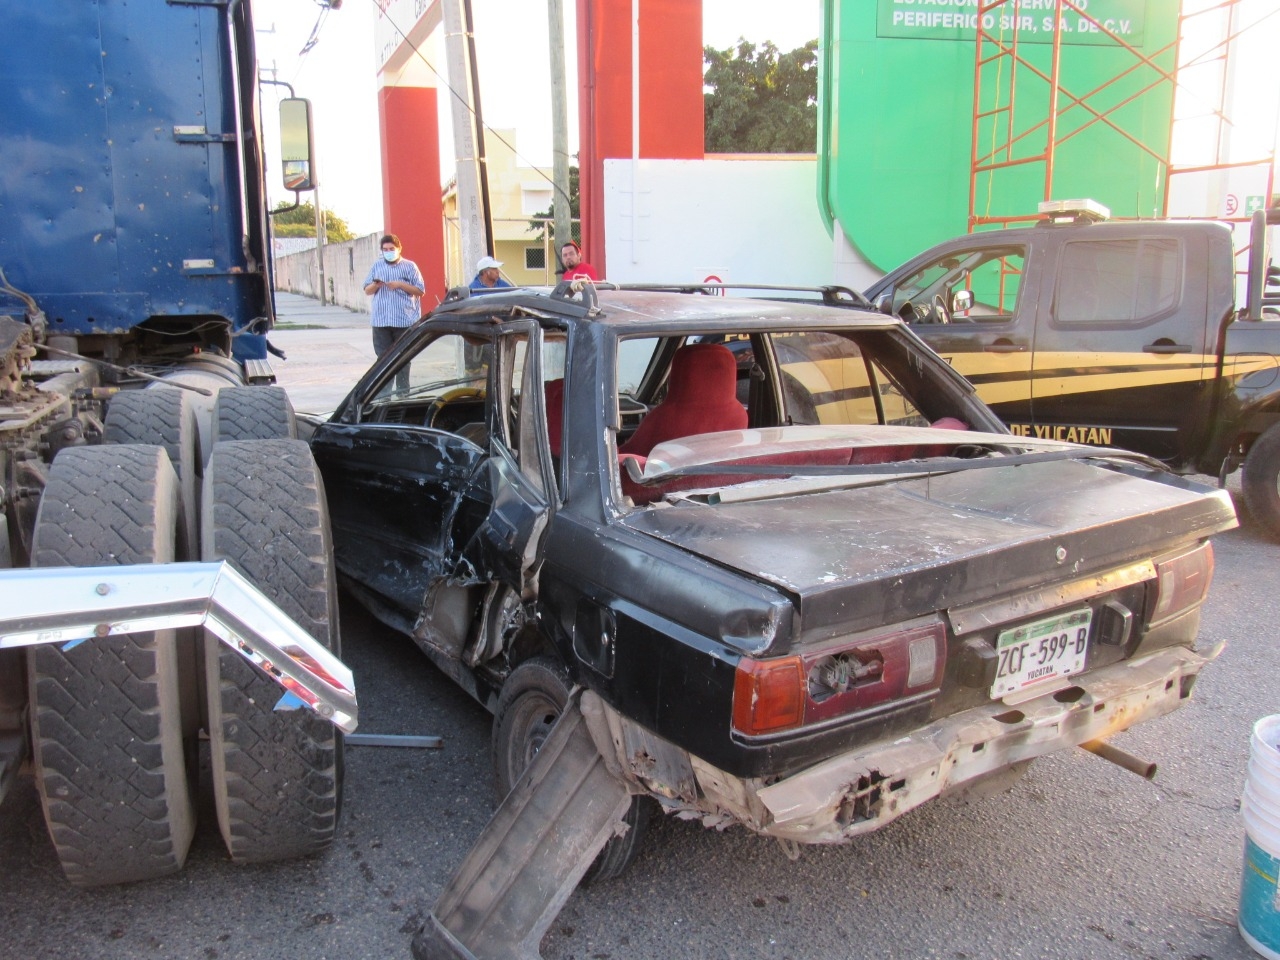 Encarcelan a trailero por arrastrar un vehículo por más de 1 km en Mérida